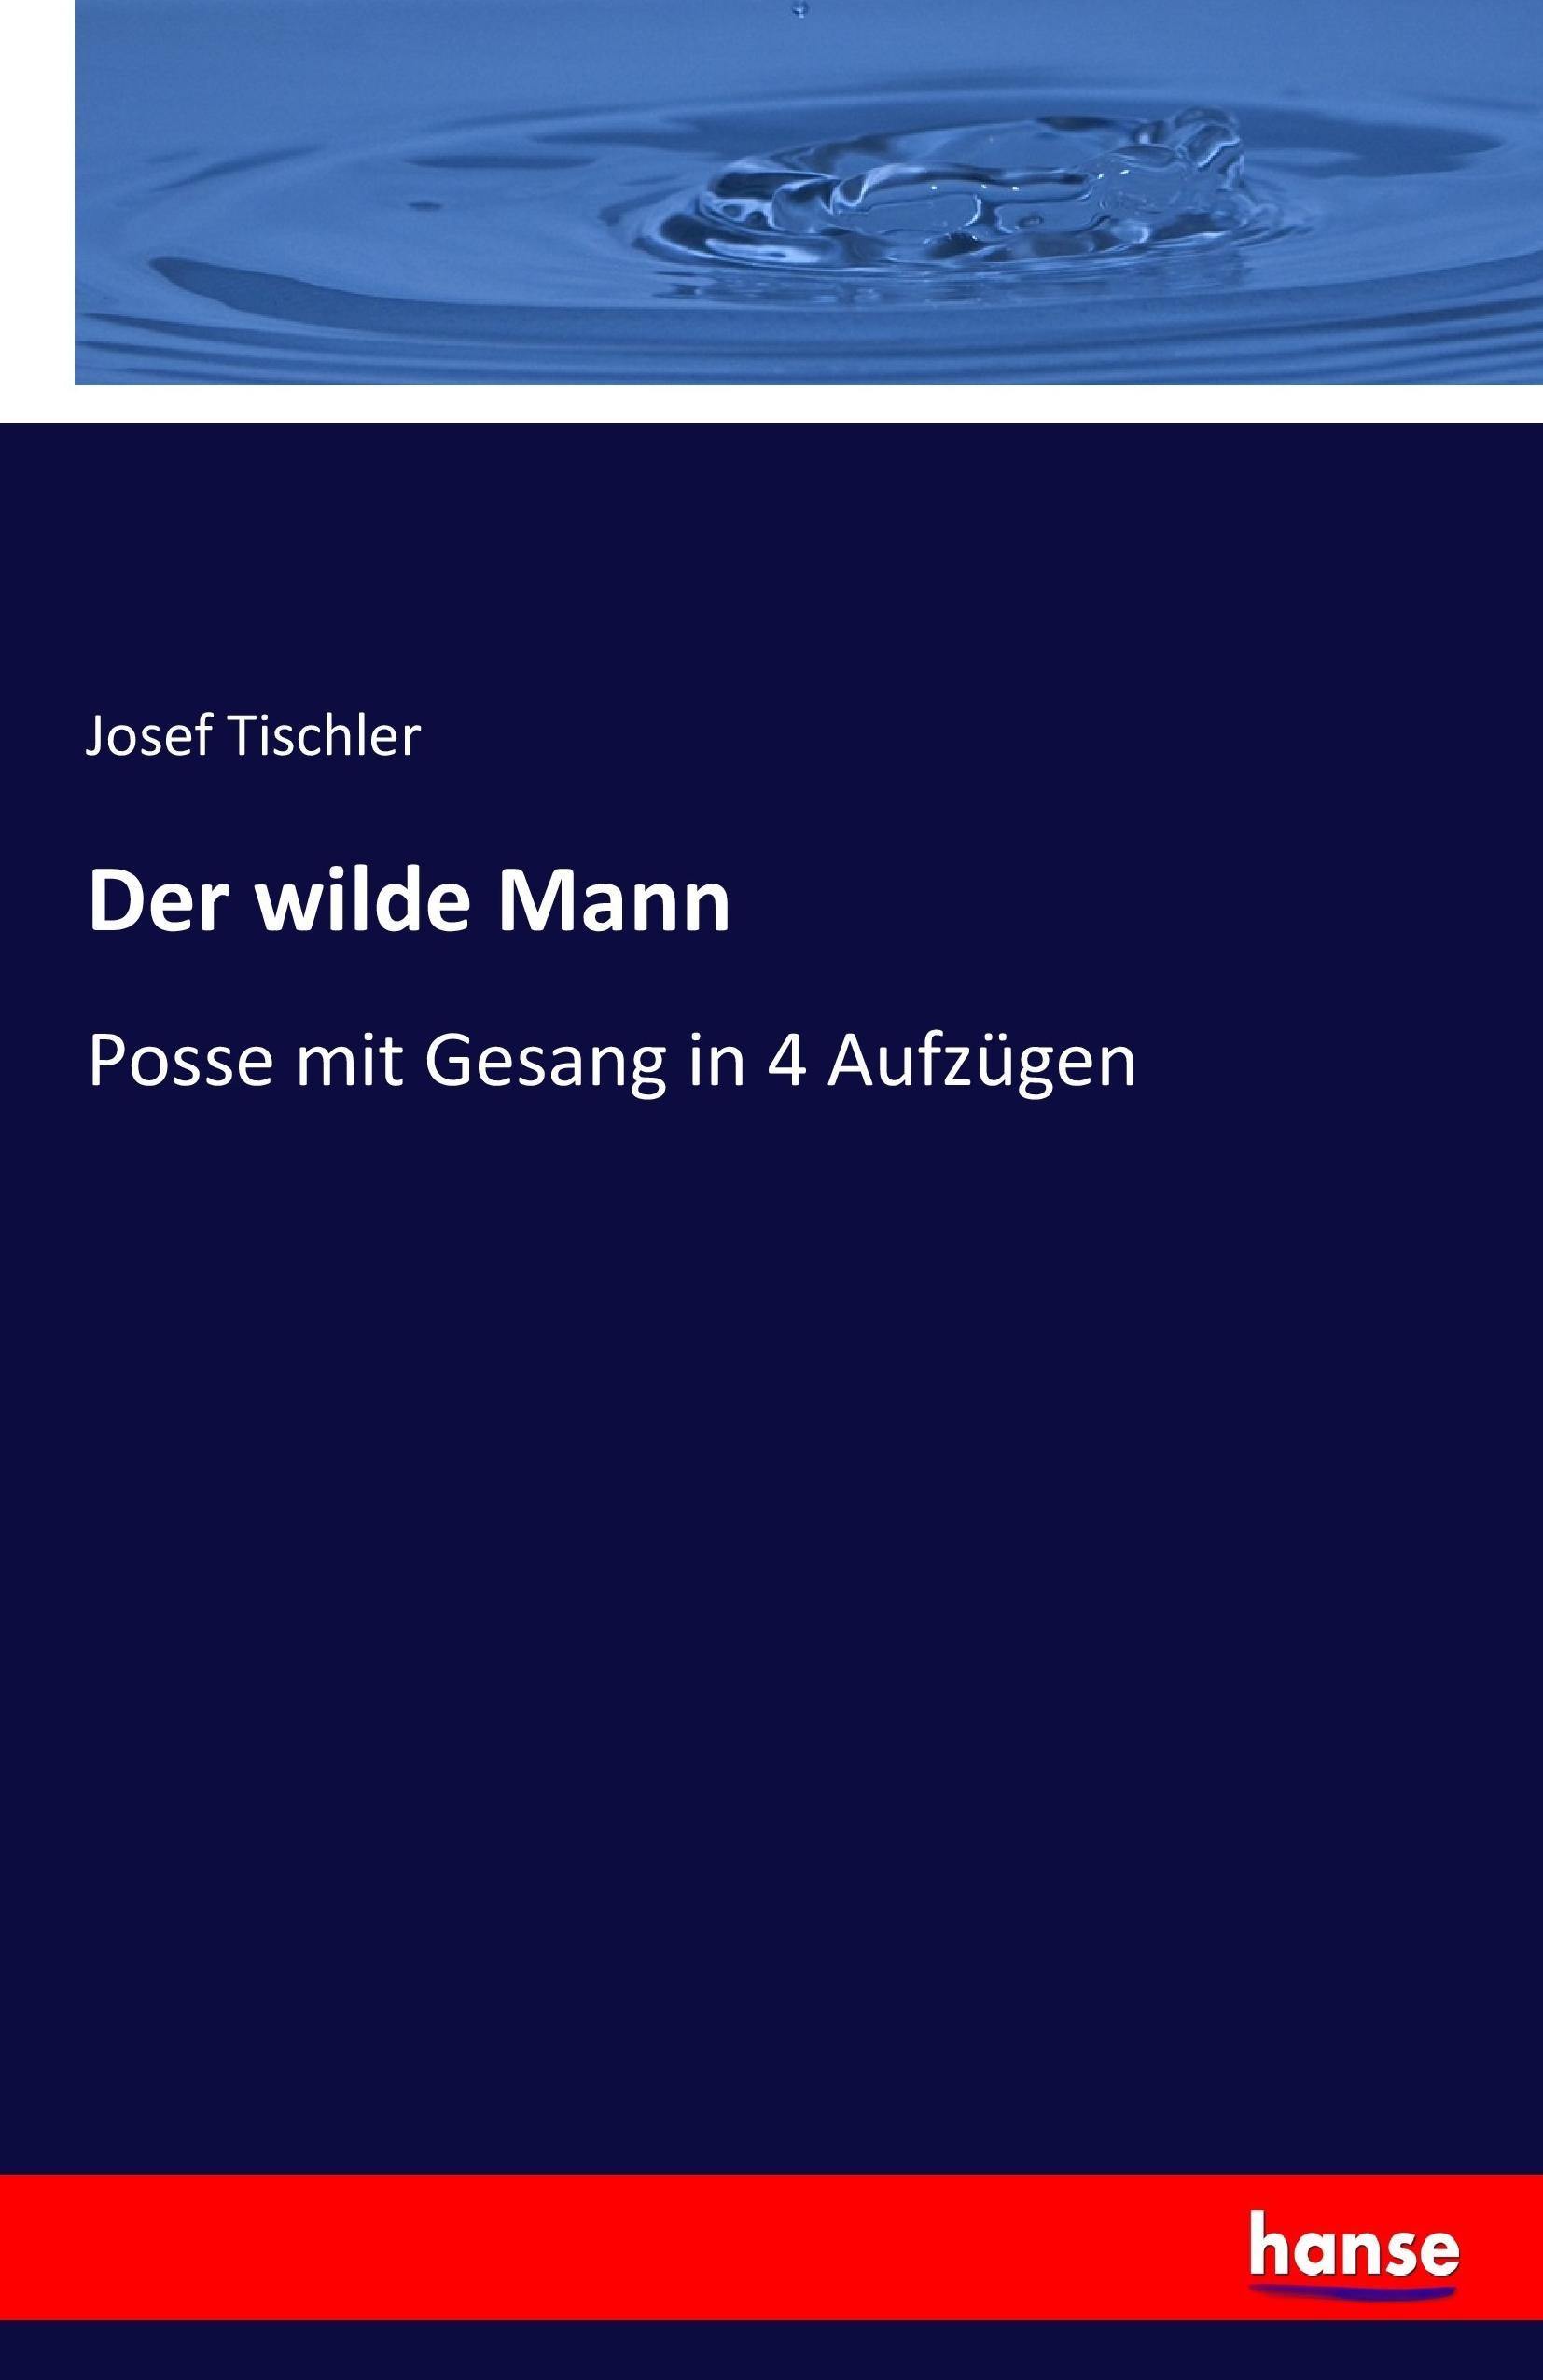 Der wilde Mann | Posse mit Gesang in 4 Aufzügen | Josef Tischler | Taschenbuch | Paperback | 116 S. | Deutsch | 2017 | hansebooks | EAN 9783743460515 - Tischler, Josef